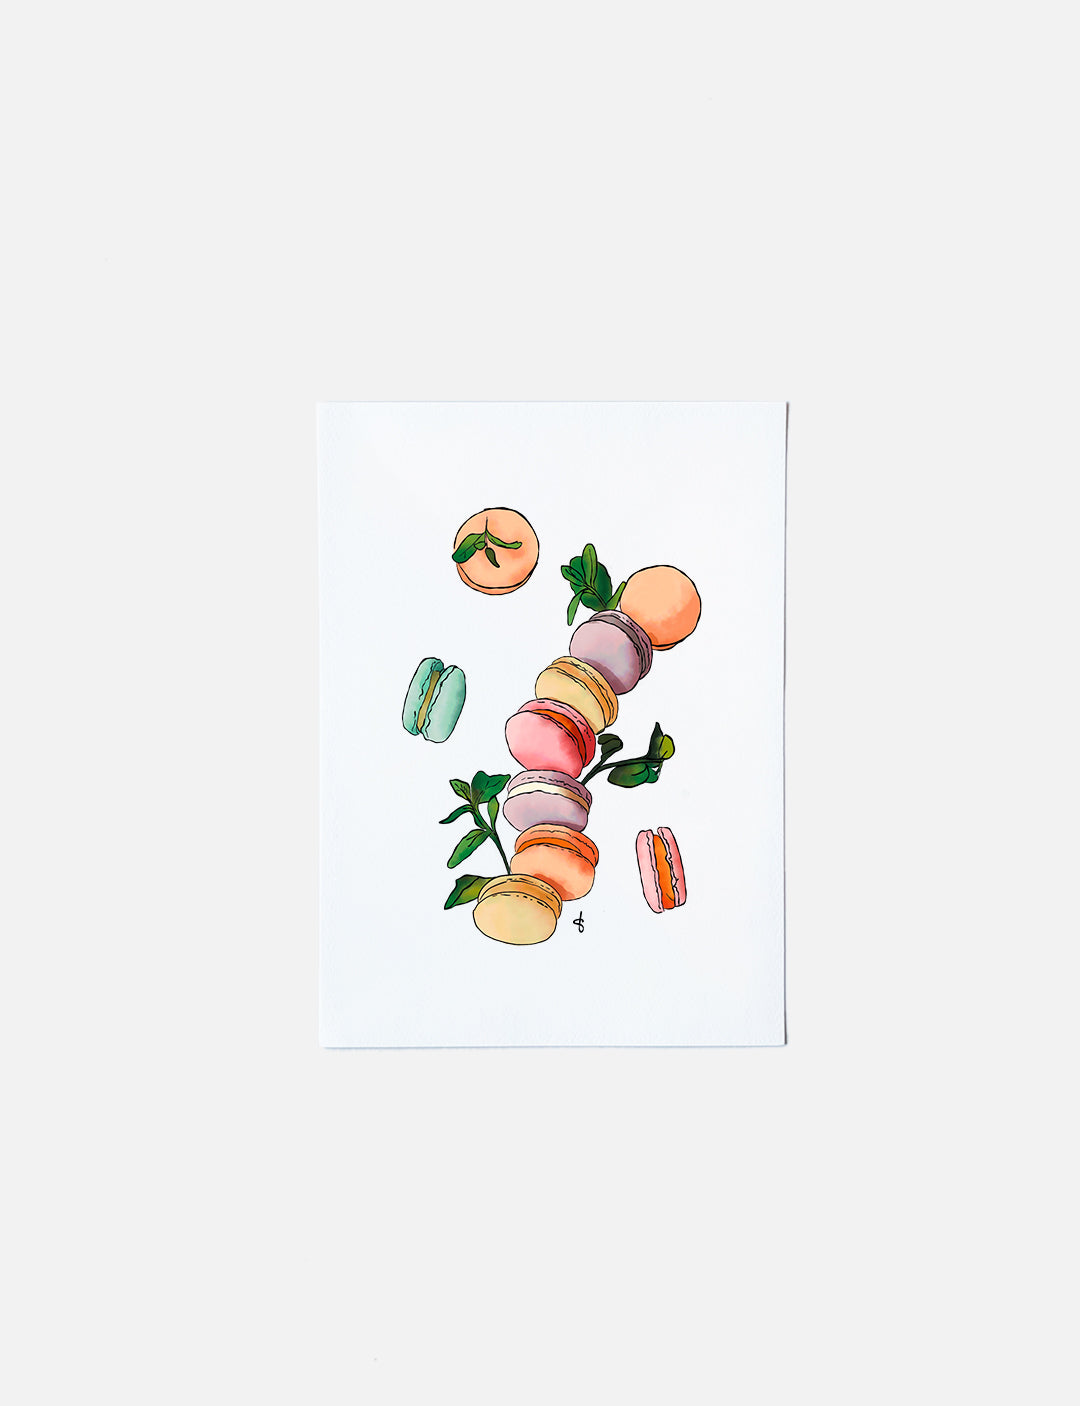 Deze kaart op A6 formaat heeft een handgetekende illustratie van vrolijk gekleurde macarons. Unieke kaarten om te gebruiken als verjaardagskaarten vrouw te versturen. Meer soorten wenskaarten bestellen kun je in onze webshop. Wie ga jij blij maken met handgemaakte kaarten?